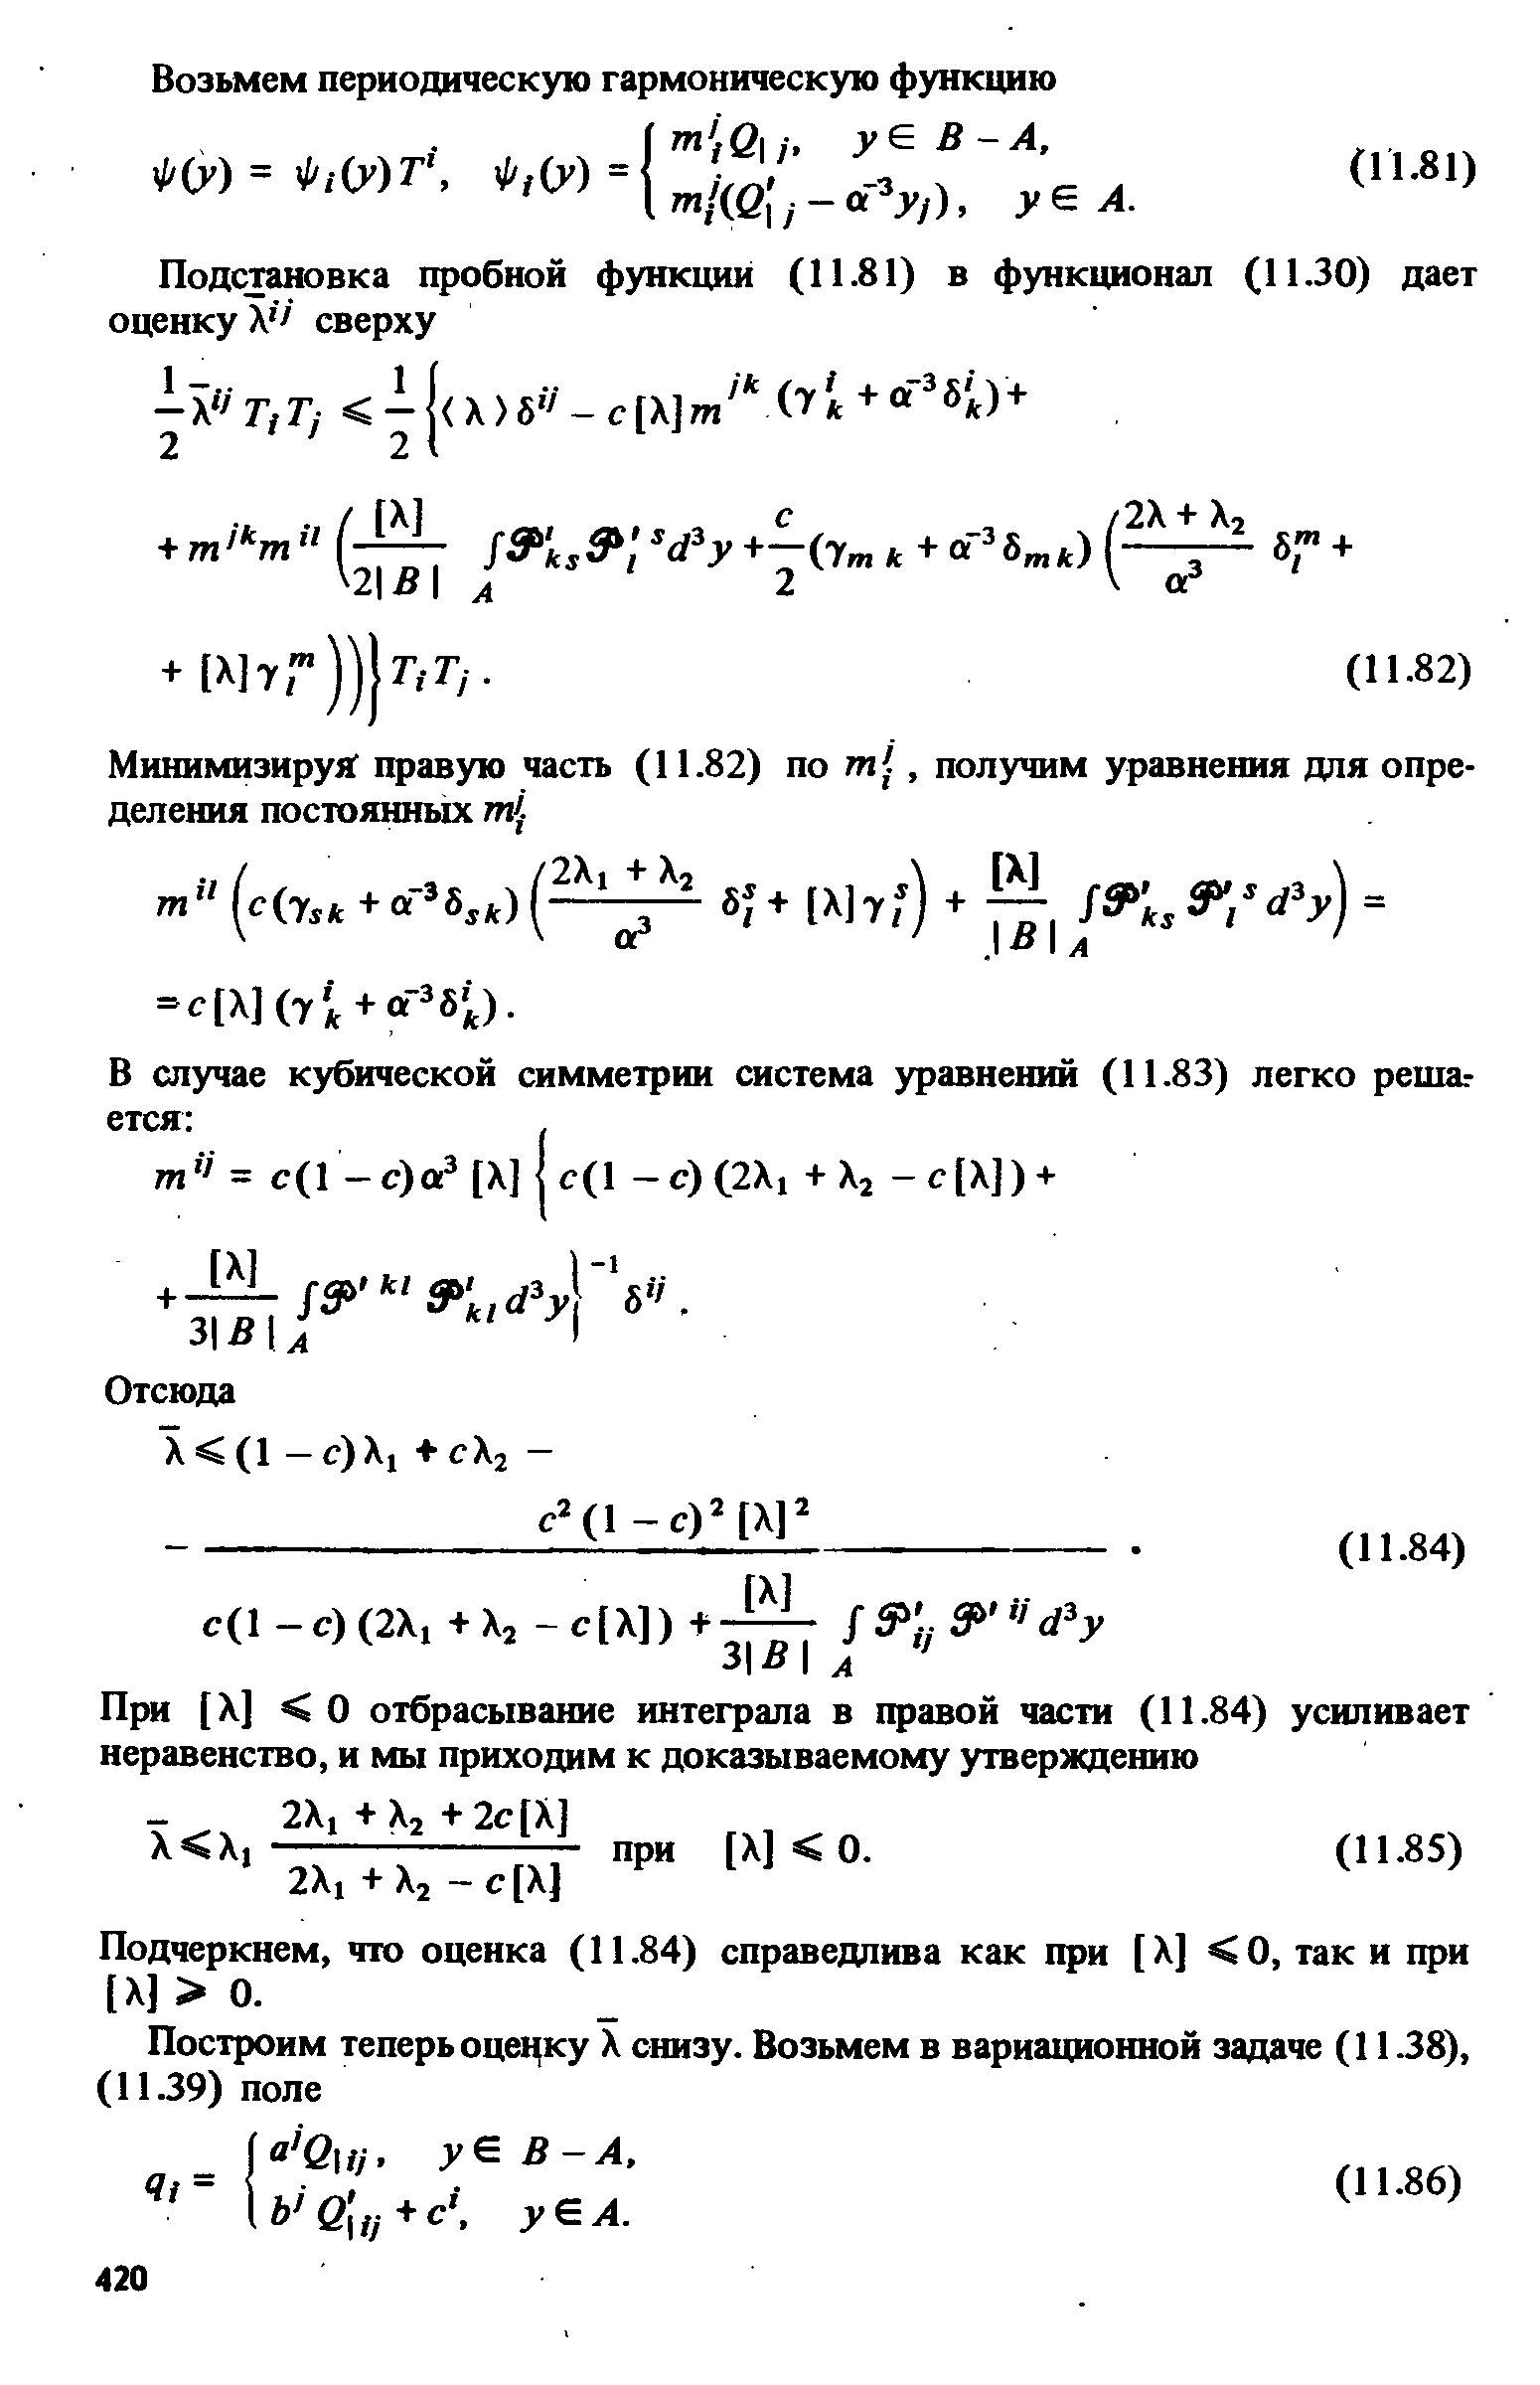 Подчеркнем, что оценка (11.84) справедлива как при [X] 0, так и при [X] 0.
